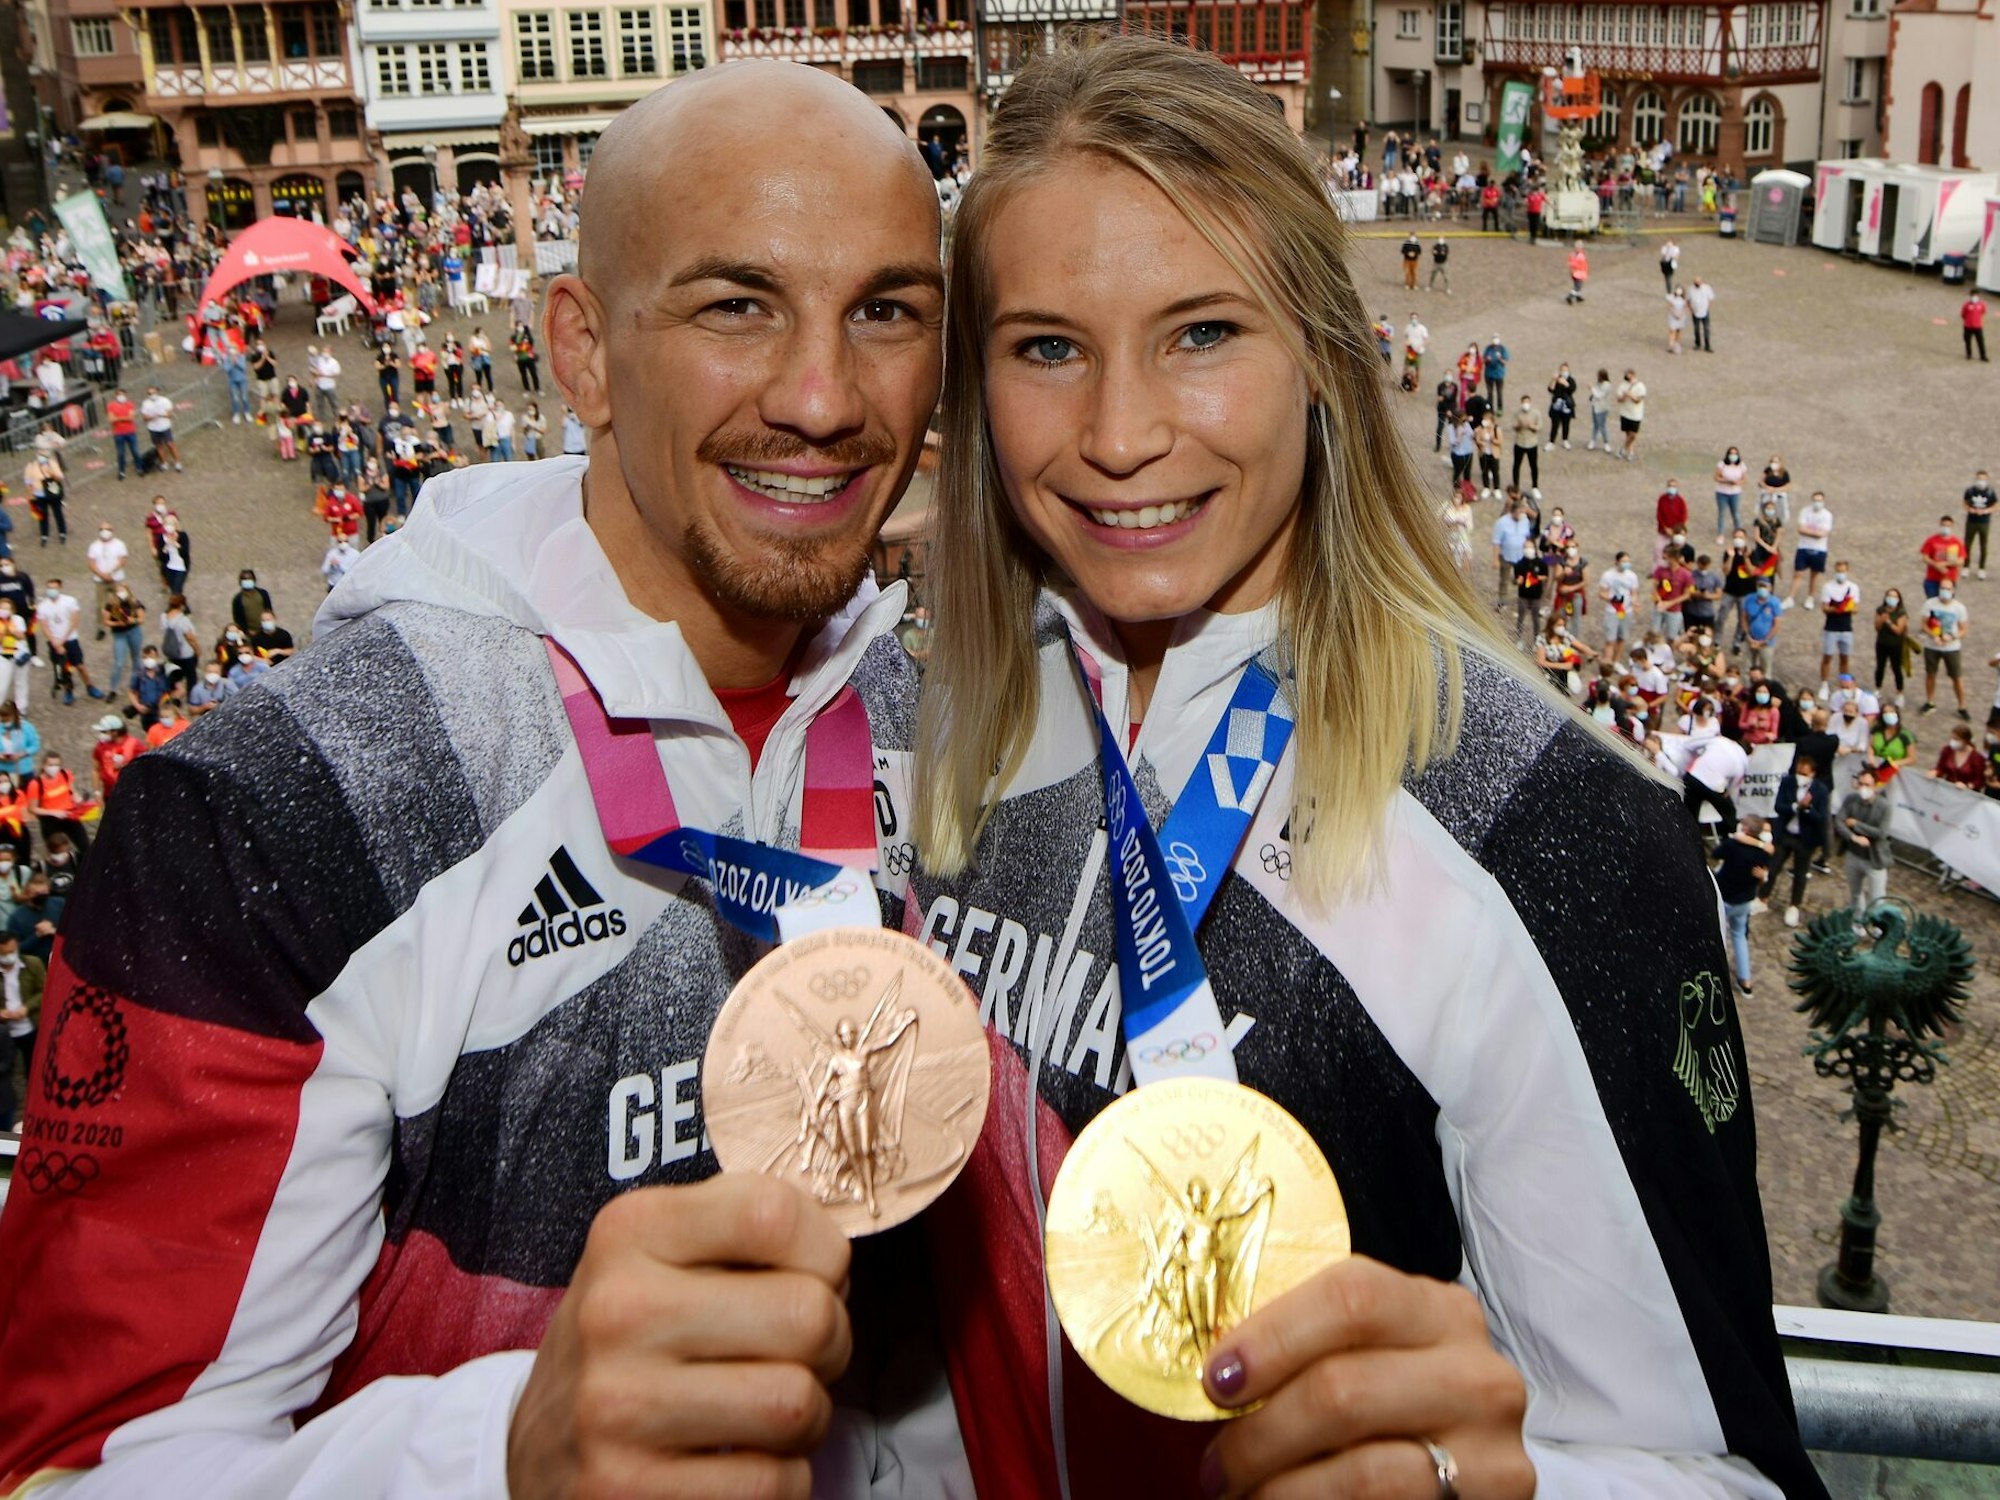 Aline Rotter-Focken, Olympiasiegerin im Ringen, und Frank Stäbler, Bronzemedaillengewinner im Ringen, stehen bei der Willkommensfeier für das Team Deutschland auf dem Balkon des Römers.